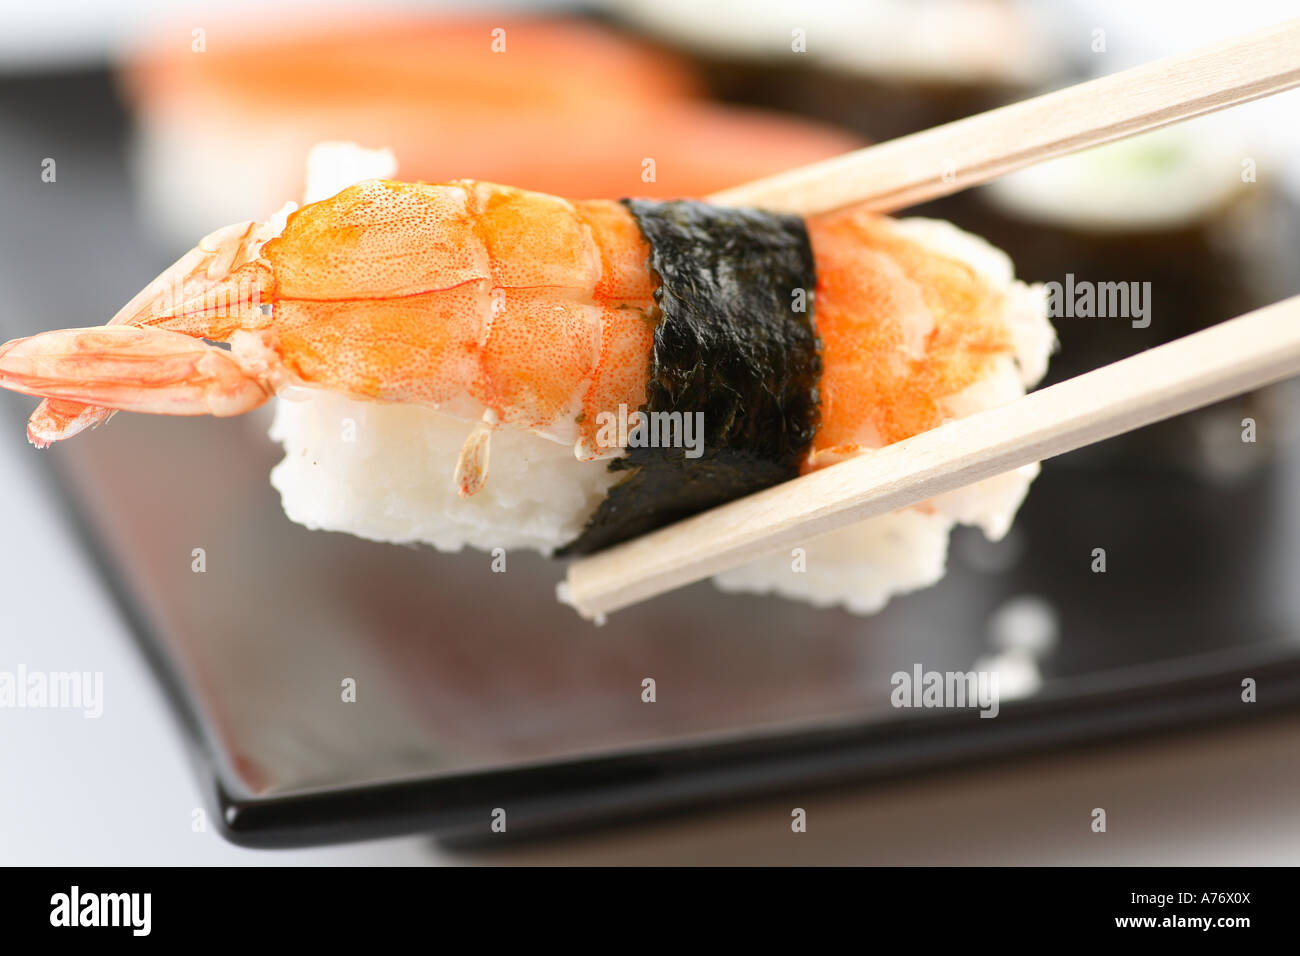 Sushi on chop sticks Stock Photo